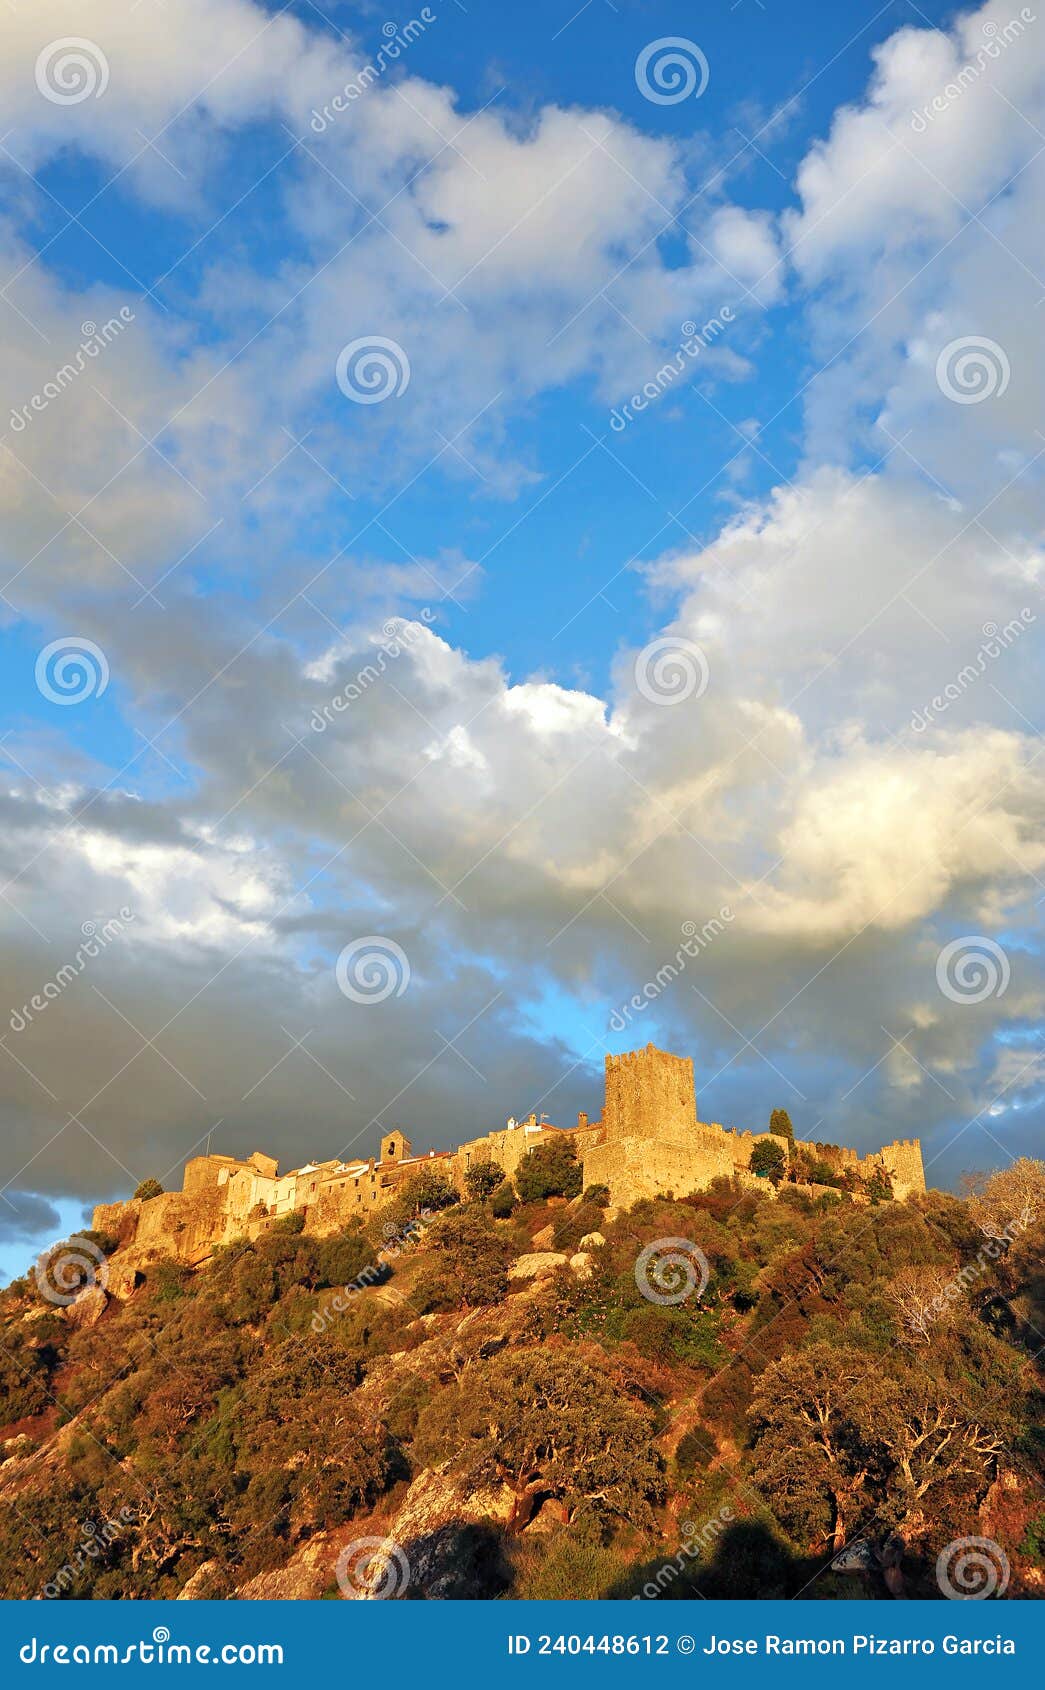 castillo de castellar de la frontera al atardecer, provincia de cÃÂ¡diz, espaÃÂ±a